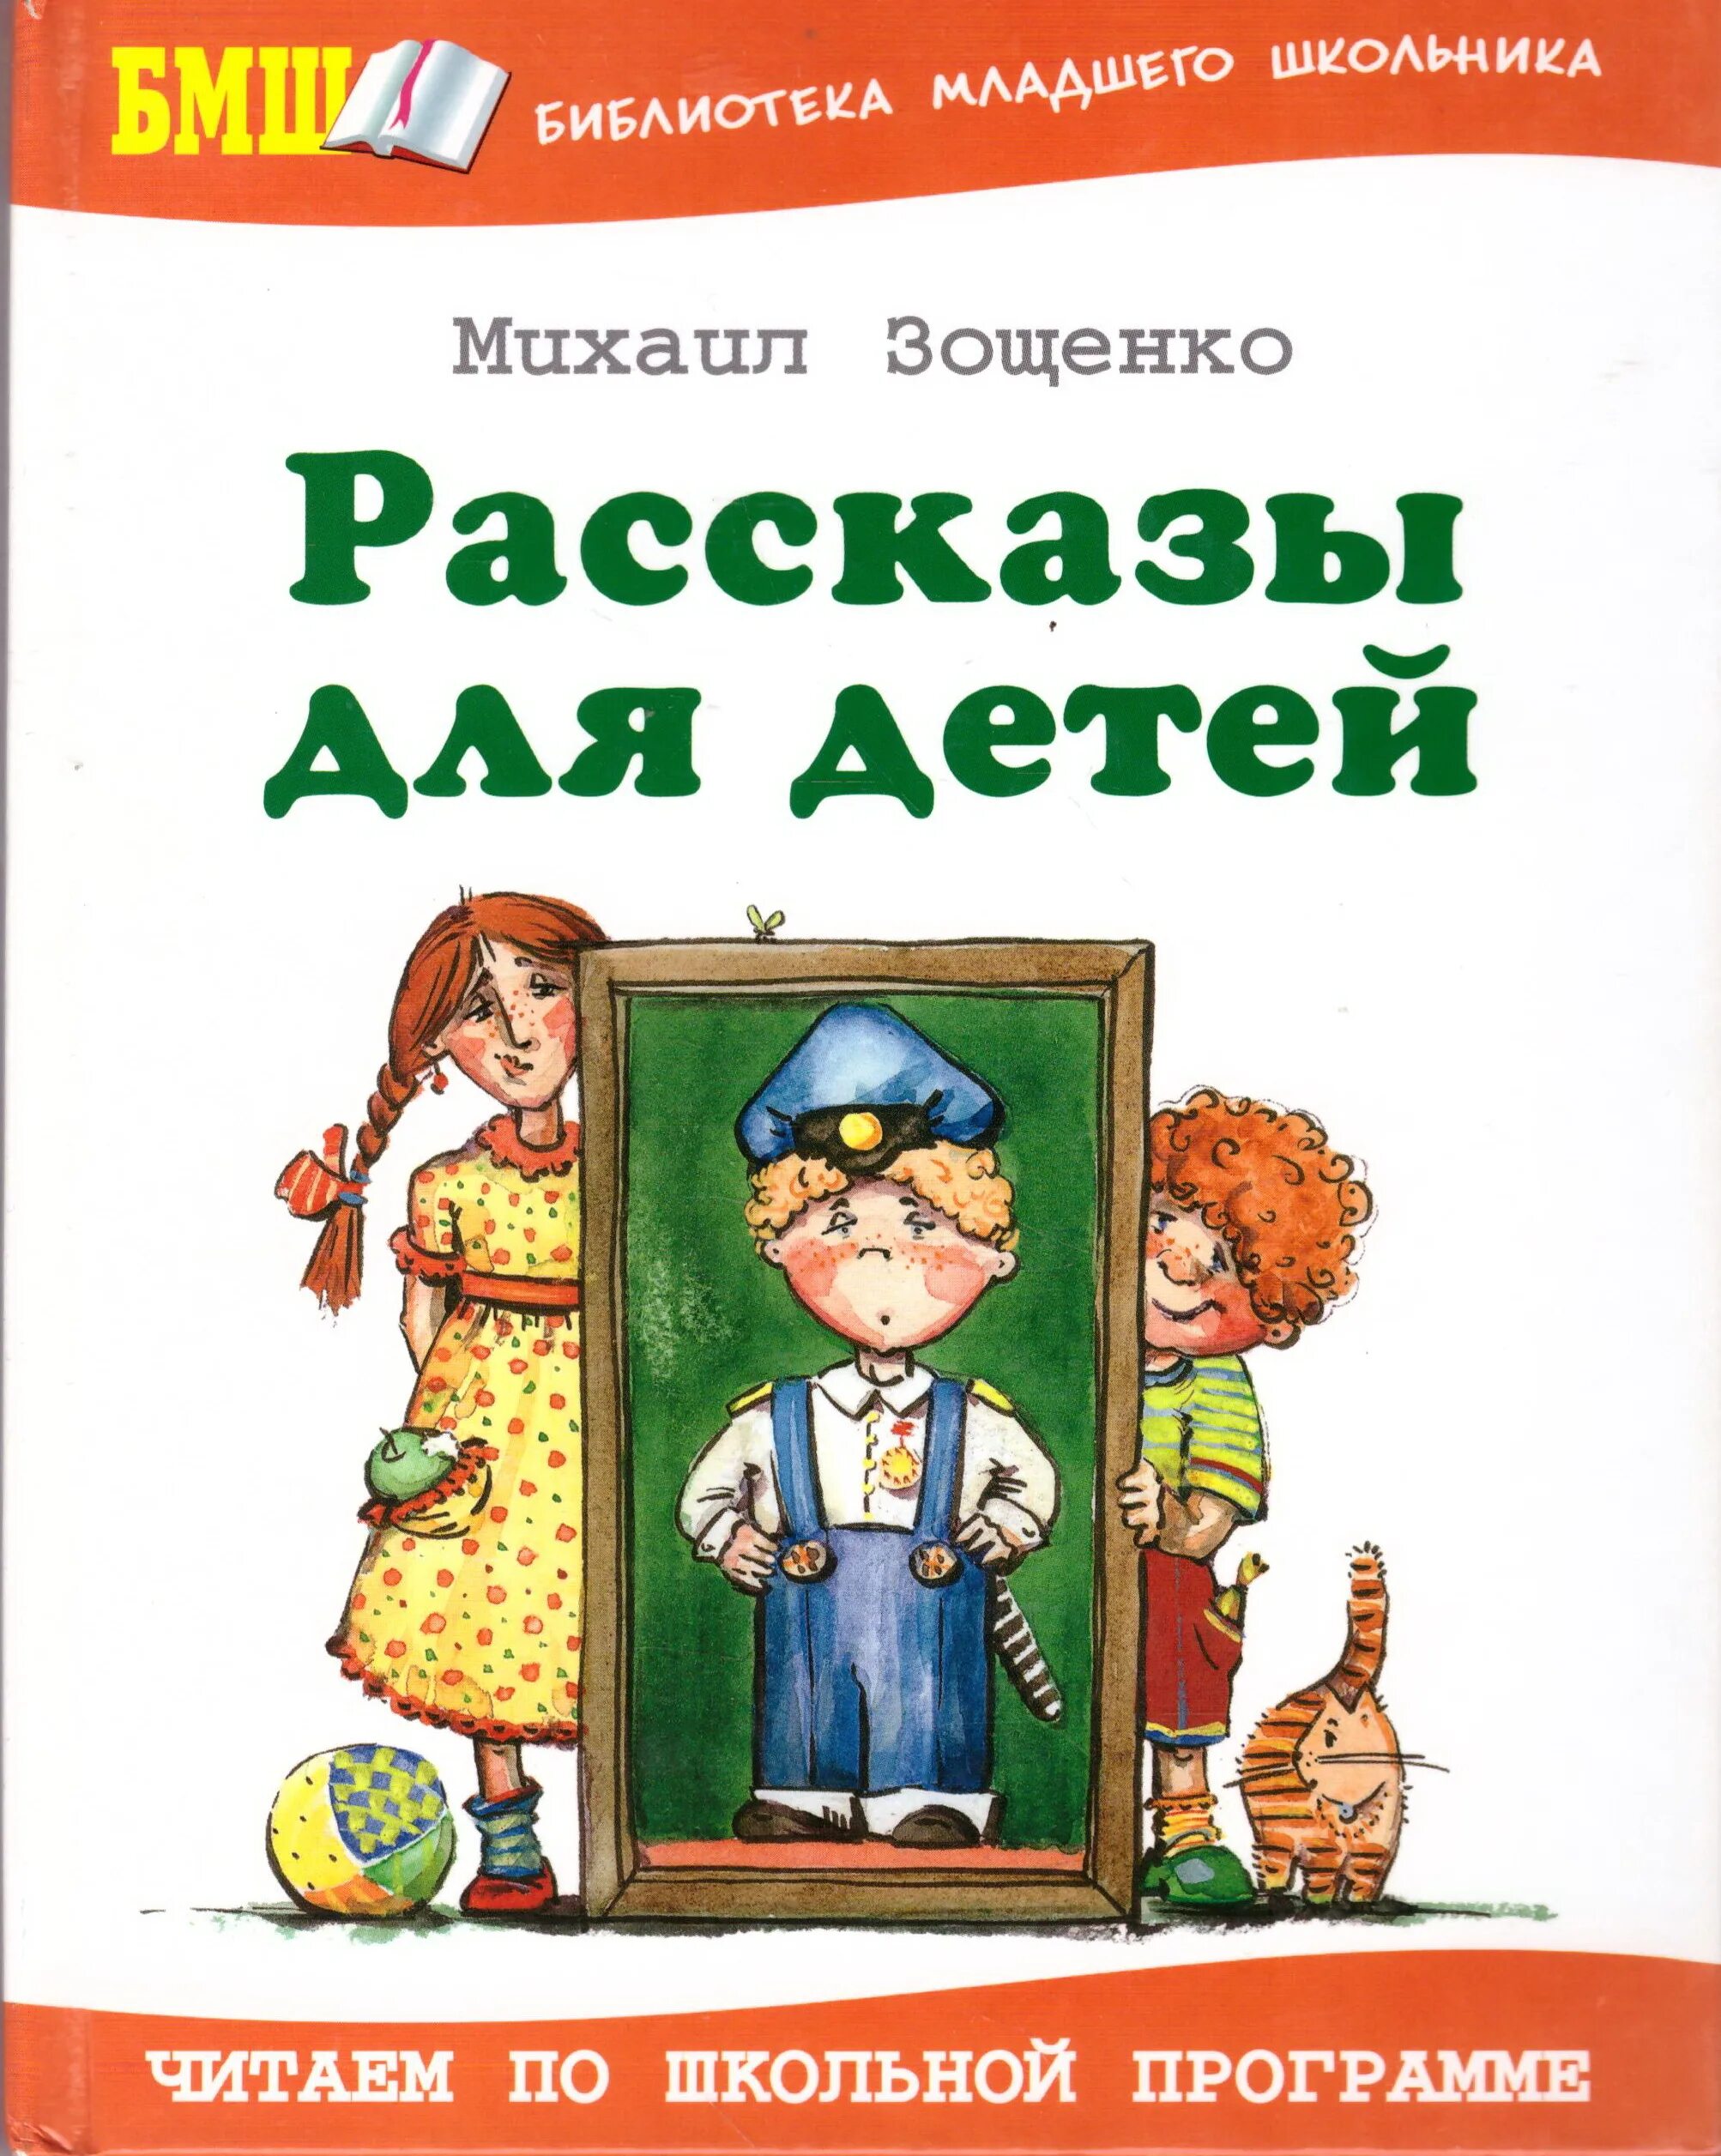 7 произведений зощенко. Книга Зощенко рассказы для детей.